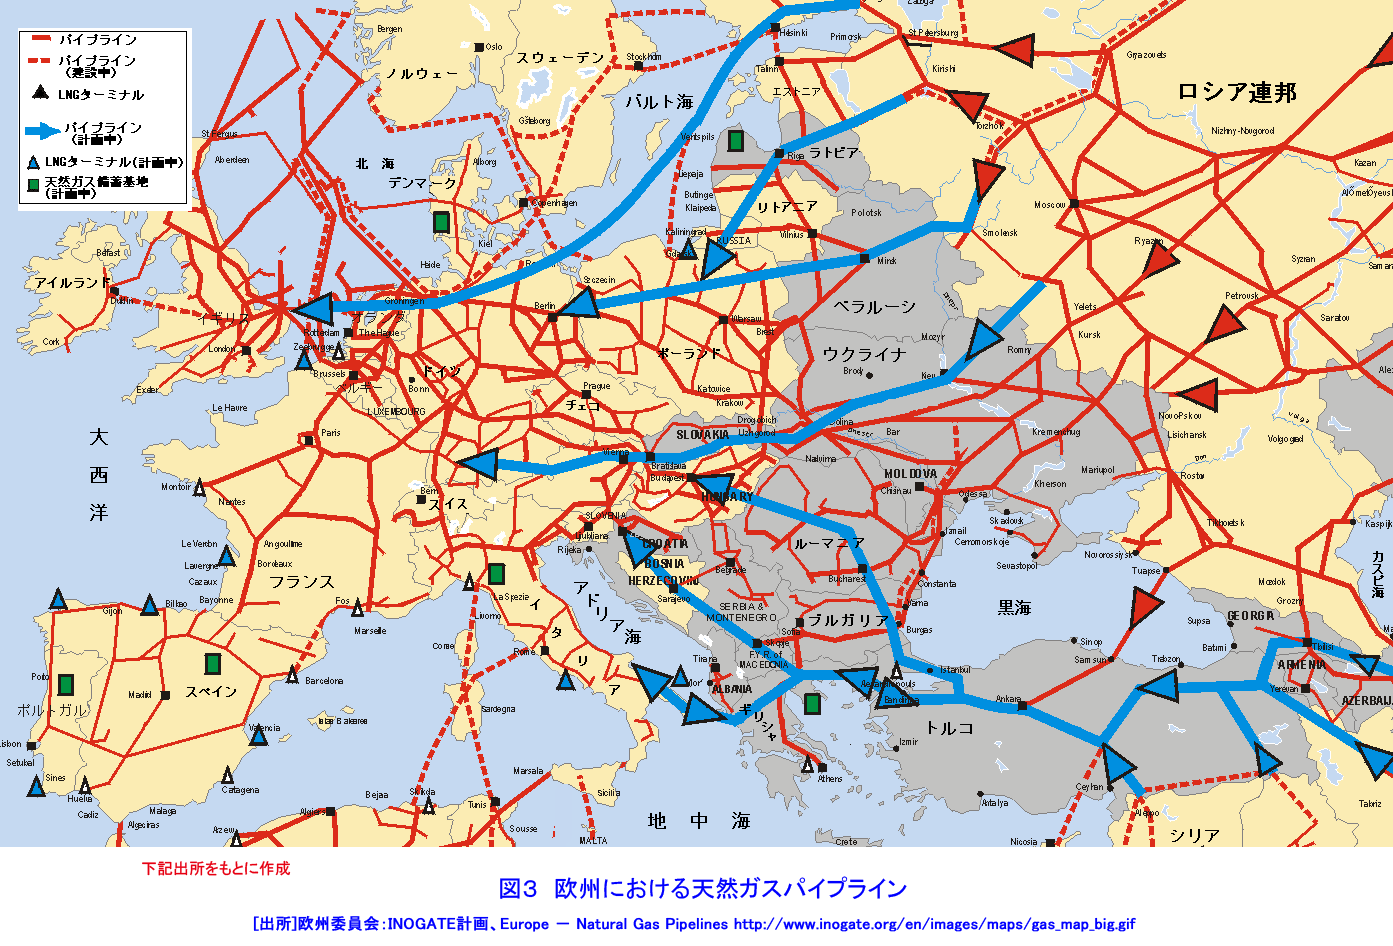 欧州における天然ガスパイプライン